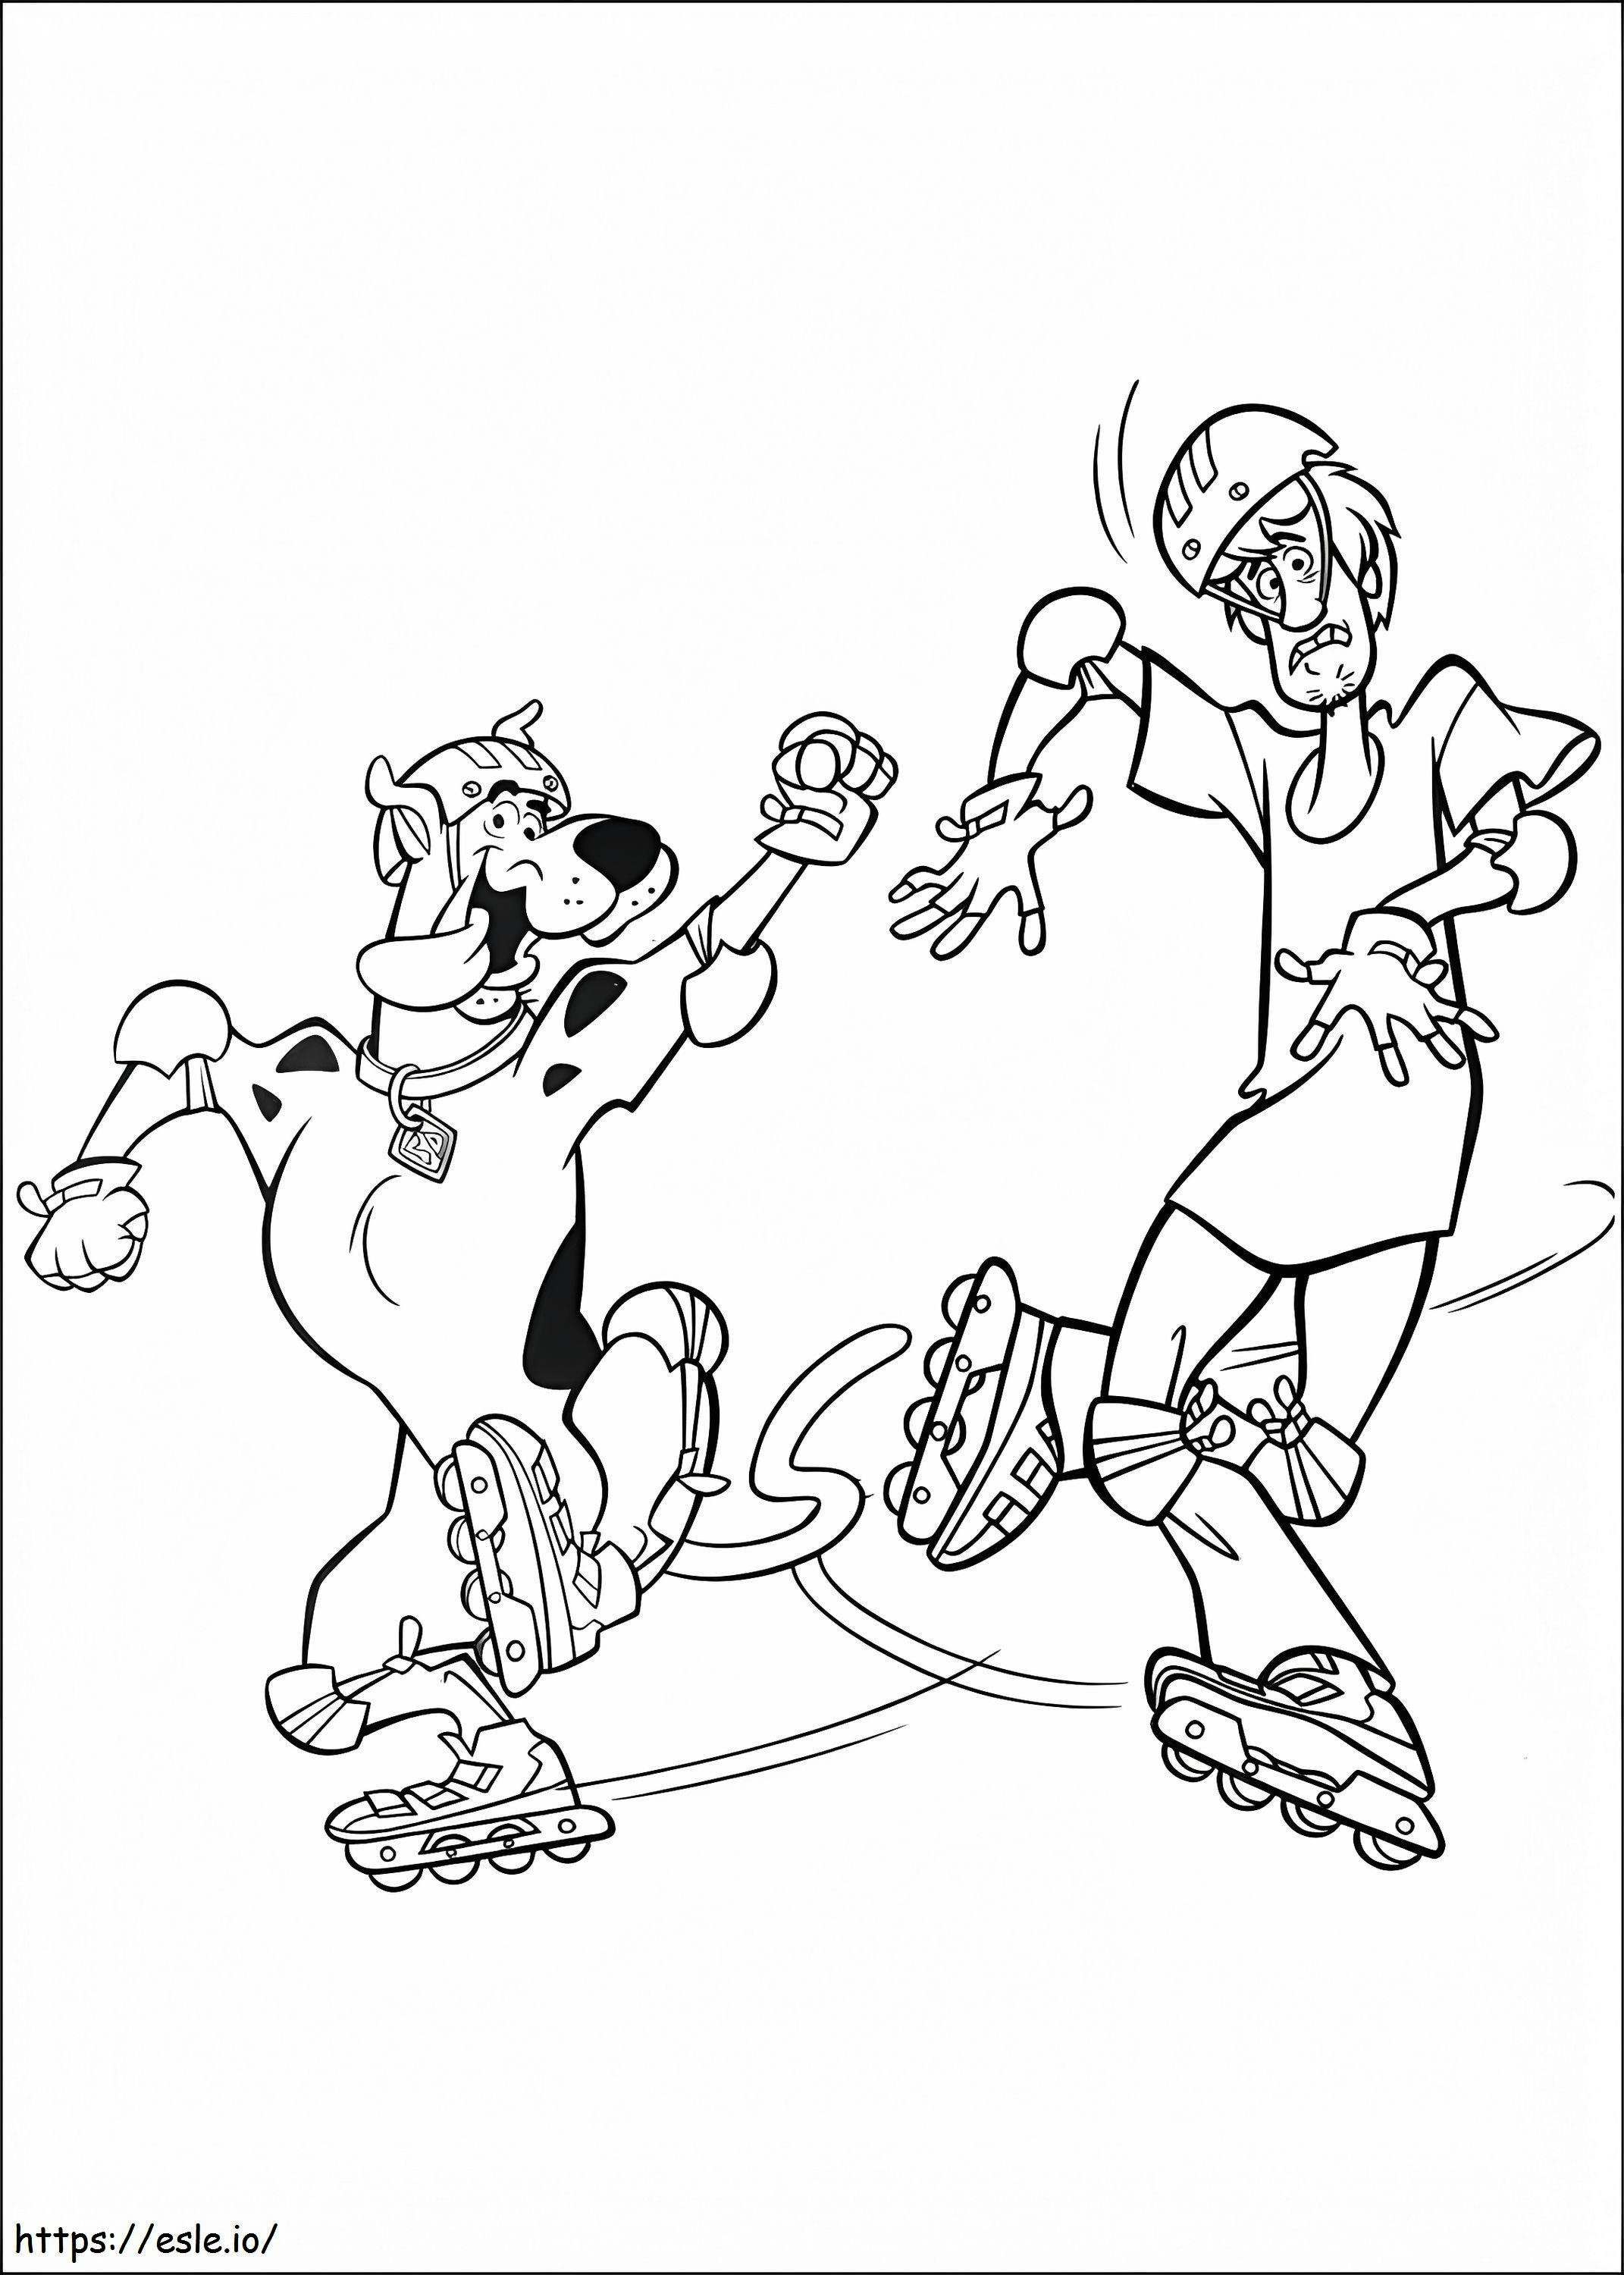 1534478879 Scooby Doo e Shaggy sui rollerblade A4 da colorare